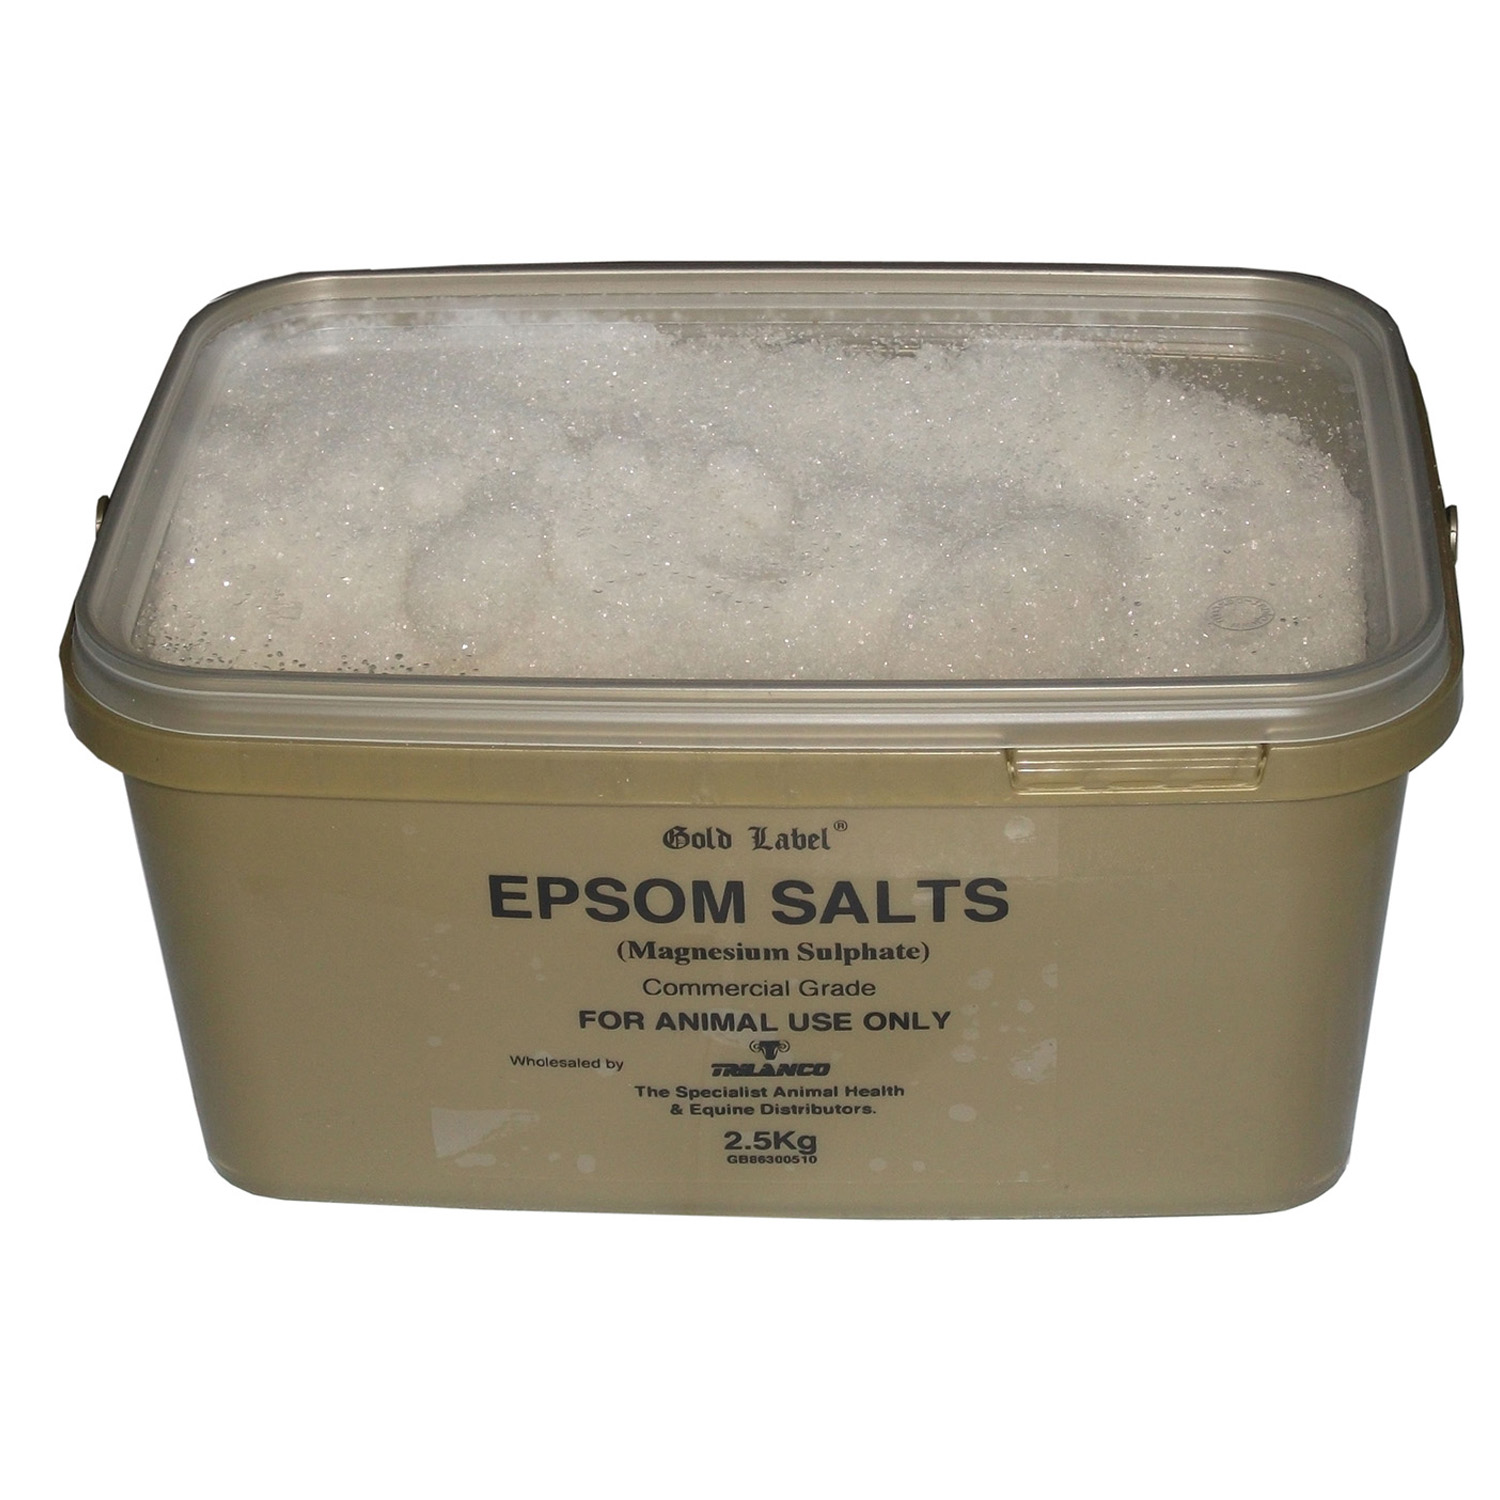 GOLD LABEL EPSOM SALTS 2.5 KG 2.5 KG